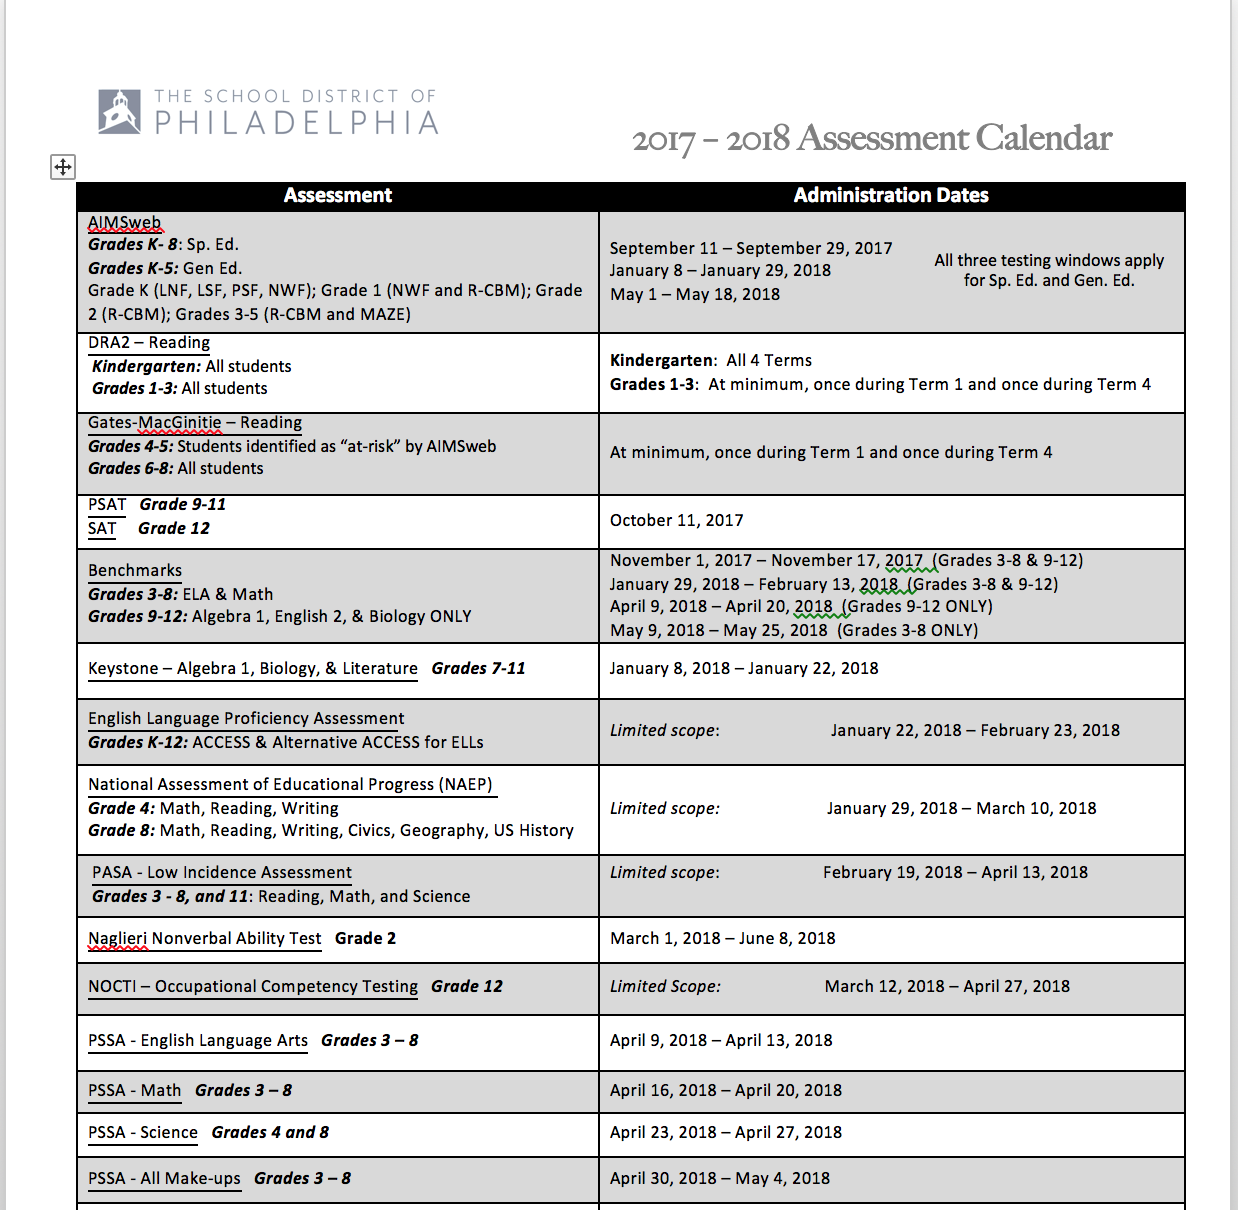 SDP Assessment Calendar Rudolph Blankenburg School